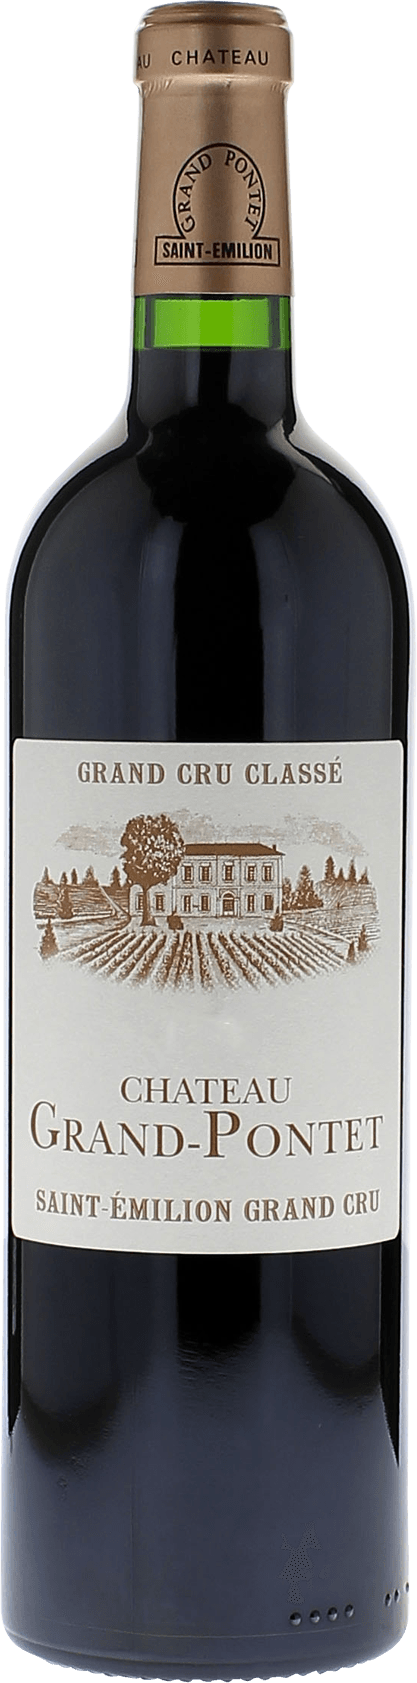 Grand pontet 2018 Grand cru class Saint-Emilion, Bordeaux rouge